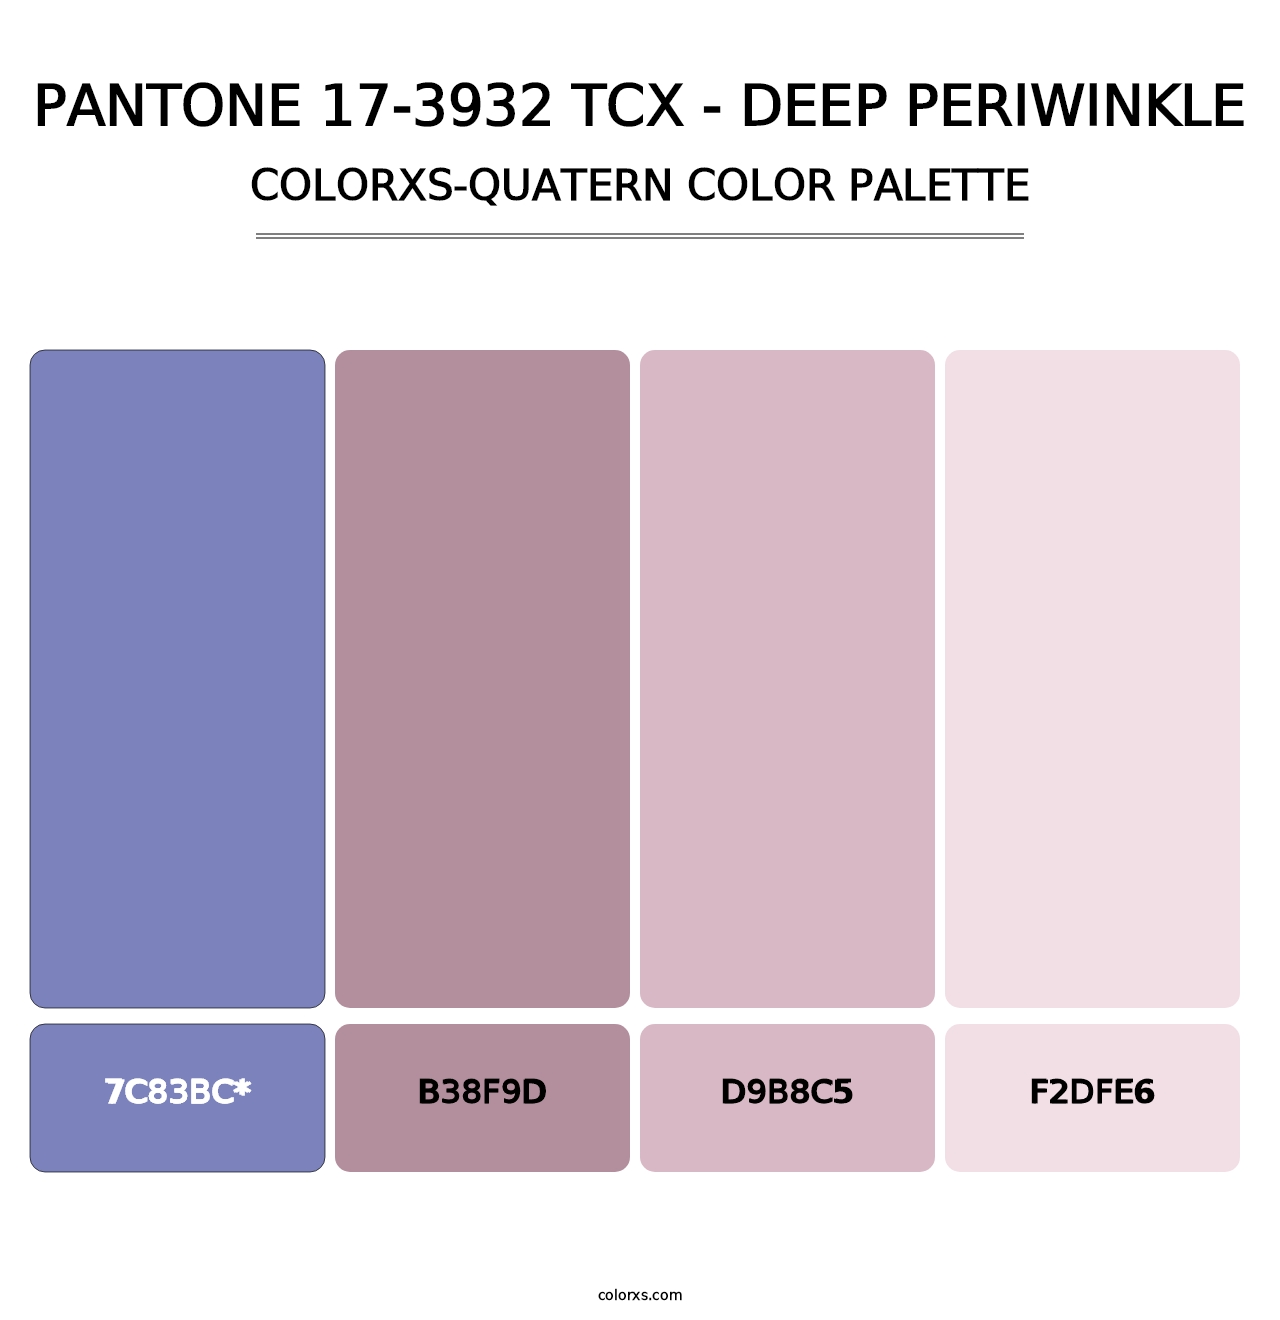 PANTONE 17-3932 TCX - Deep Periwinkle - Colorxs Quatern Palette